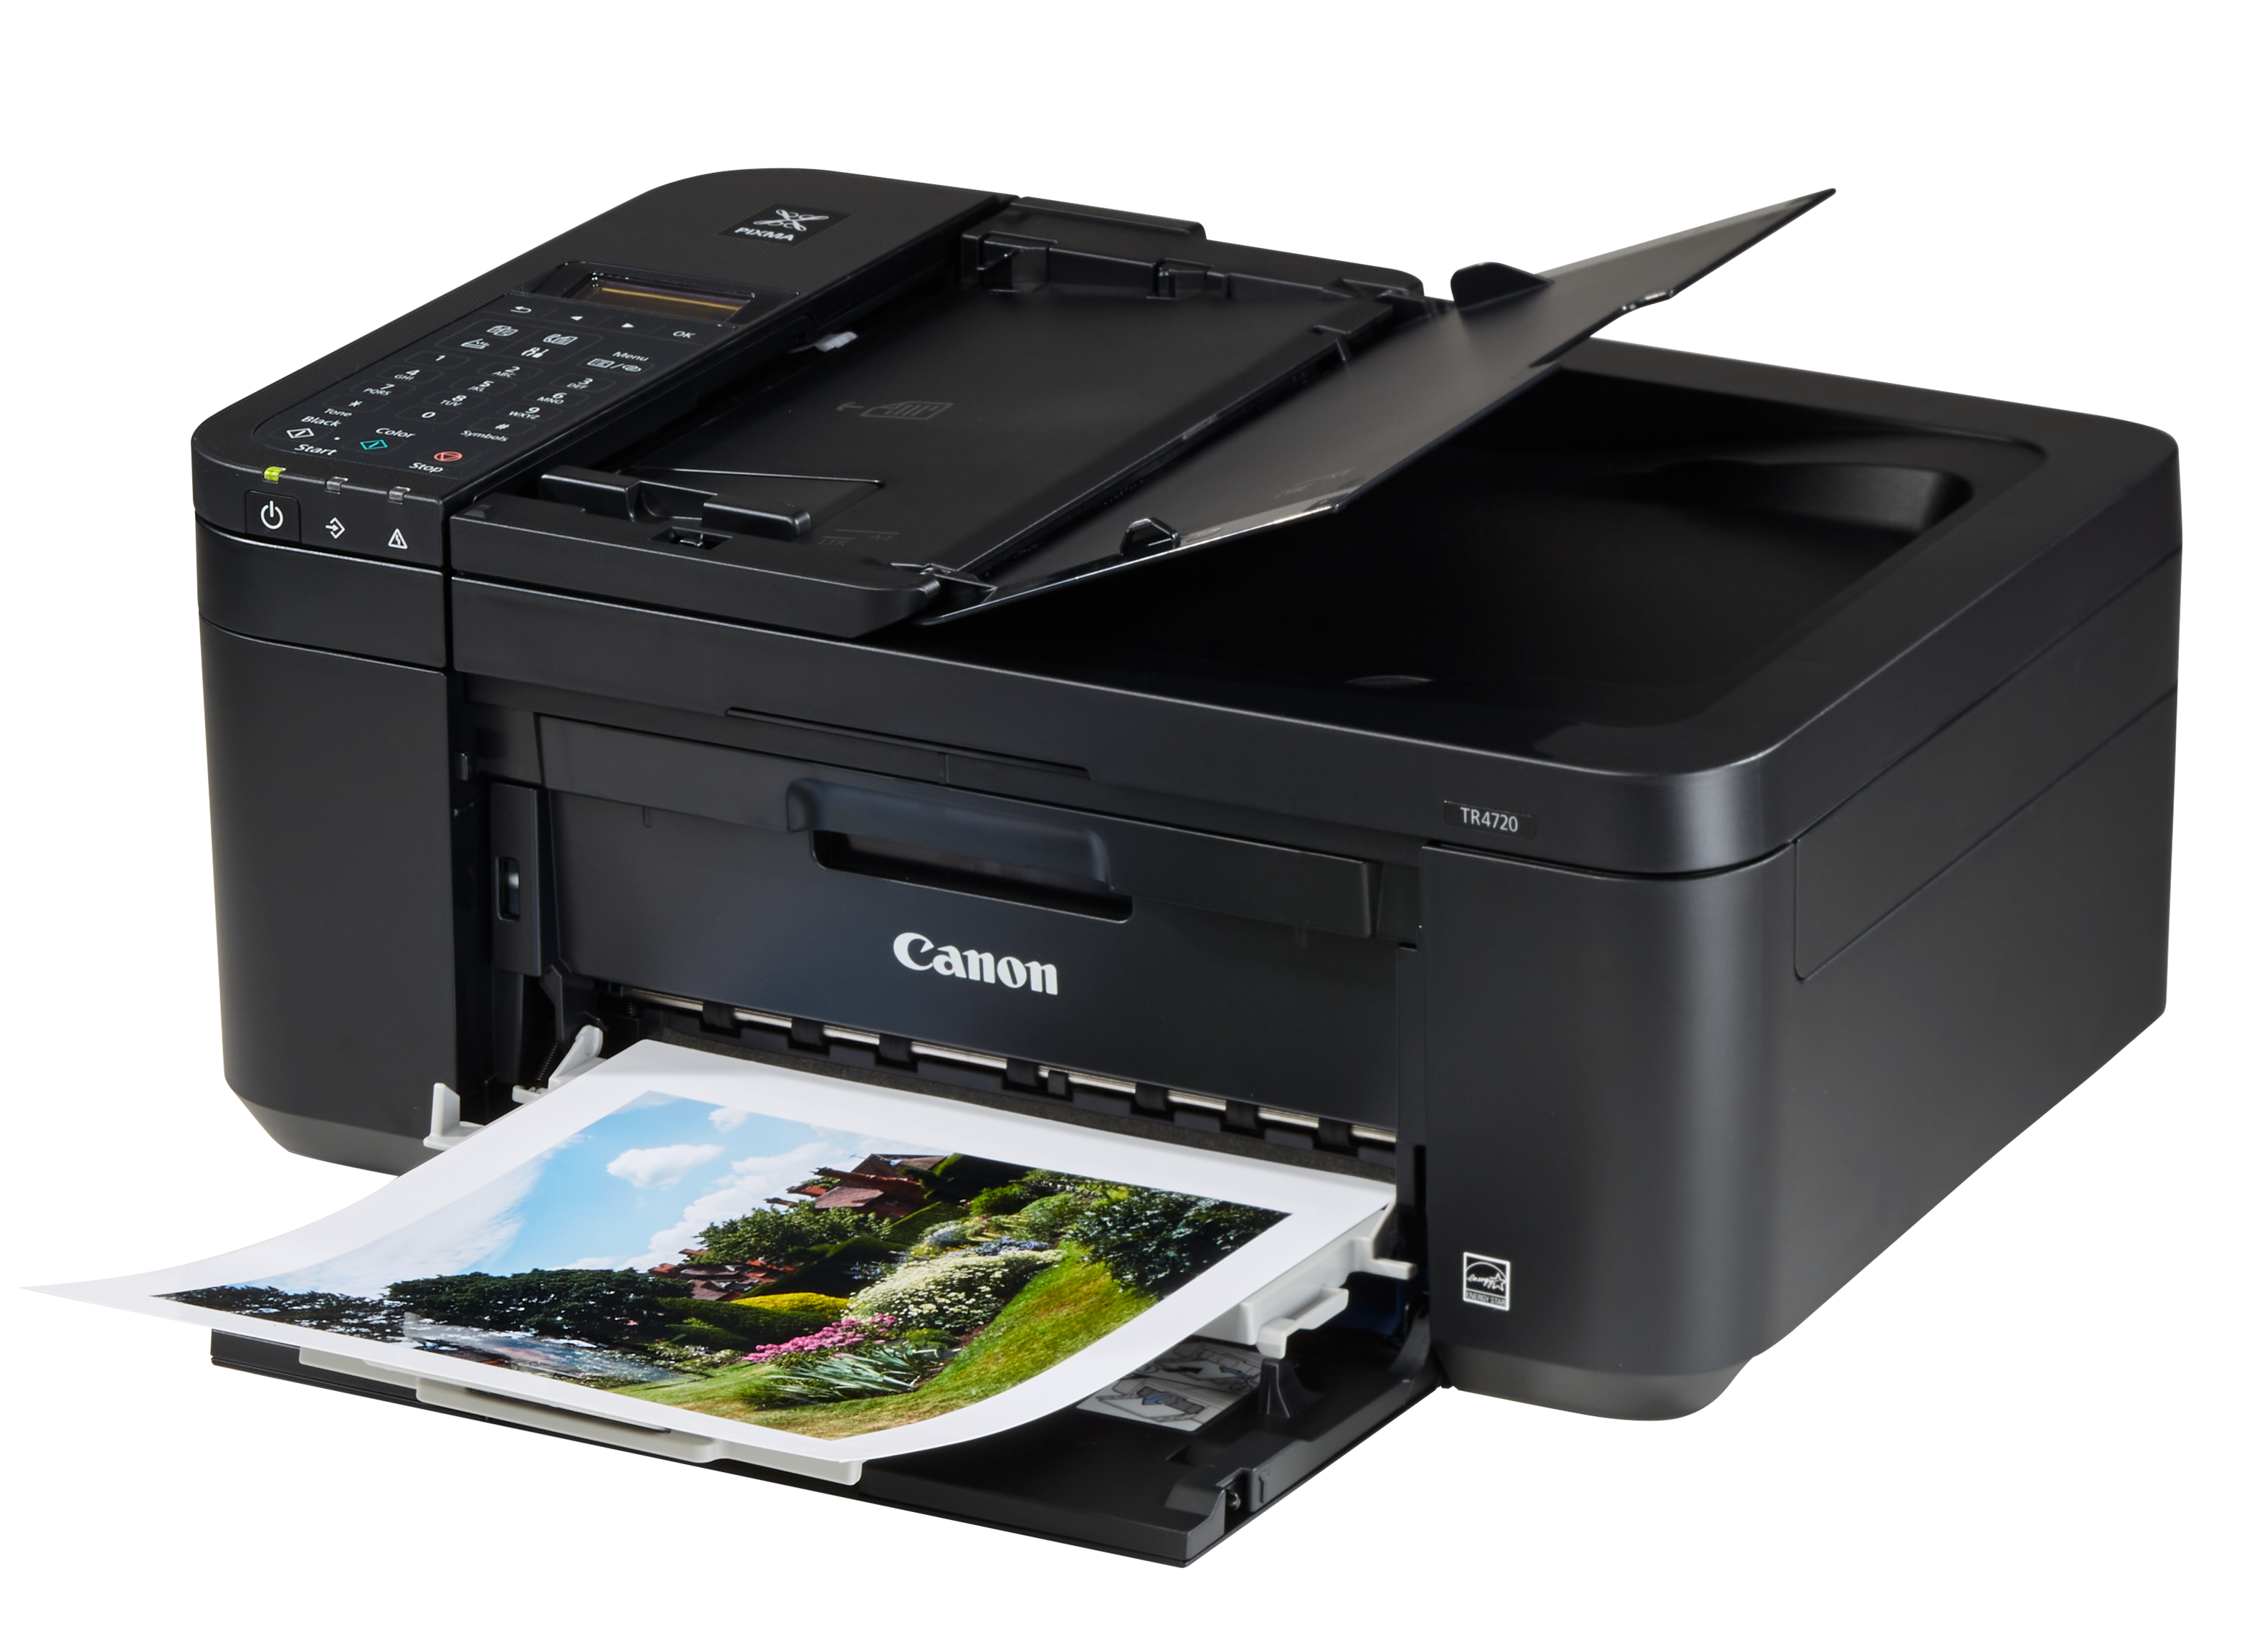 Canon PIXMA TR4720 Printer Review - Consumer Reports